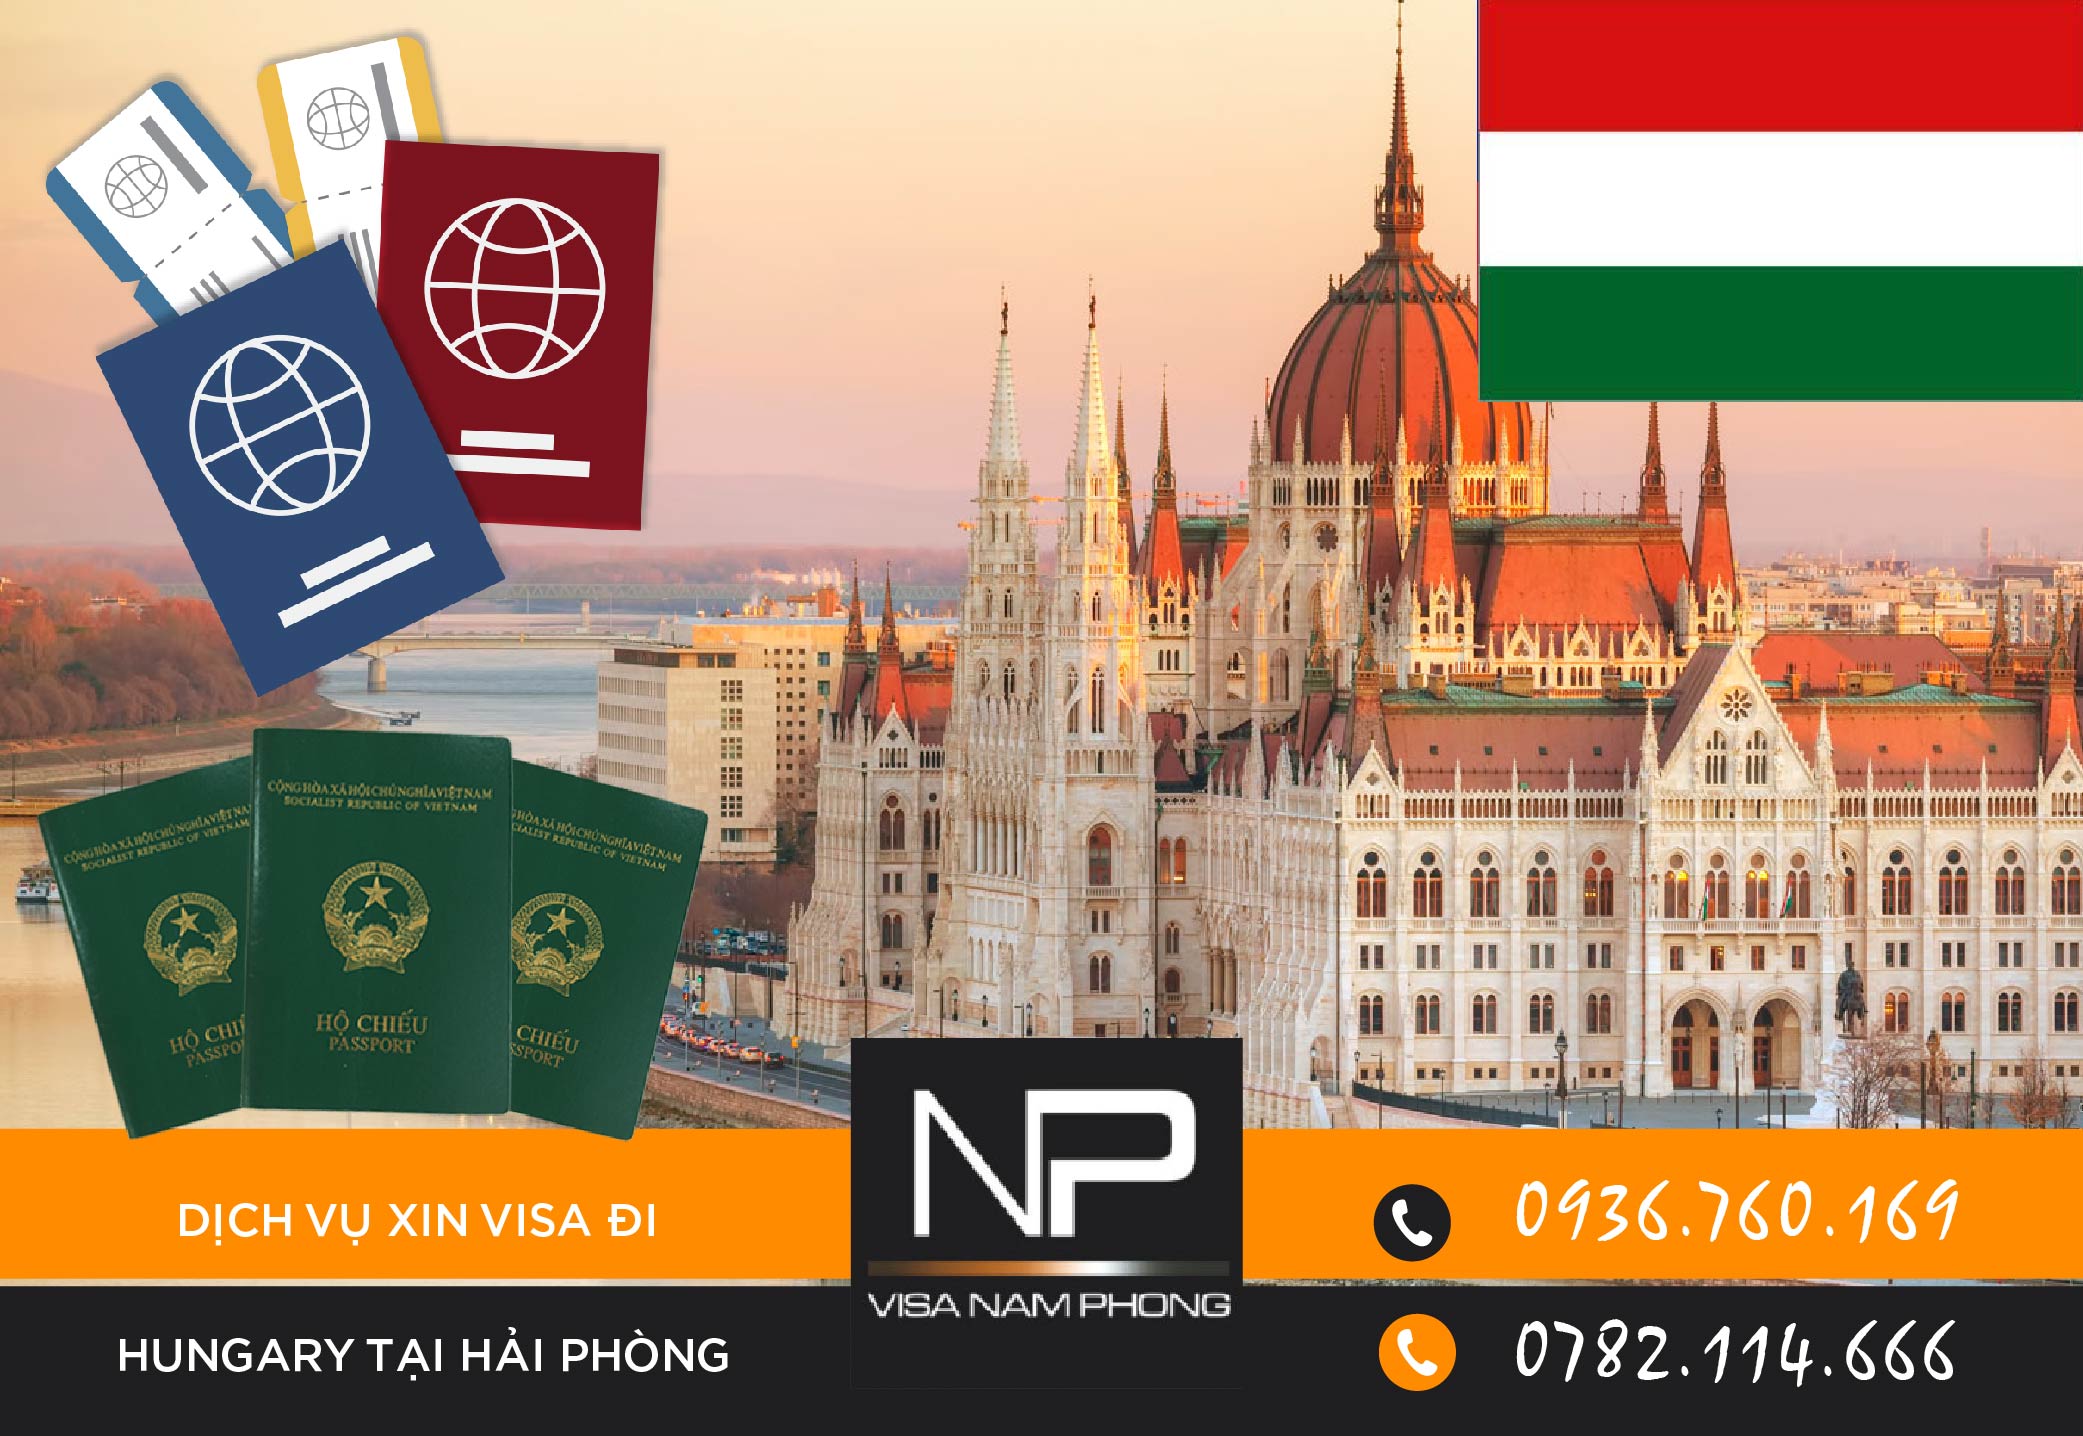 Dịch vụ xin visa đi Hungary tại Hải Phòng